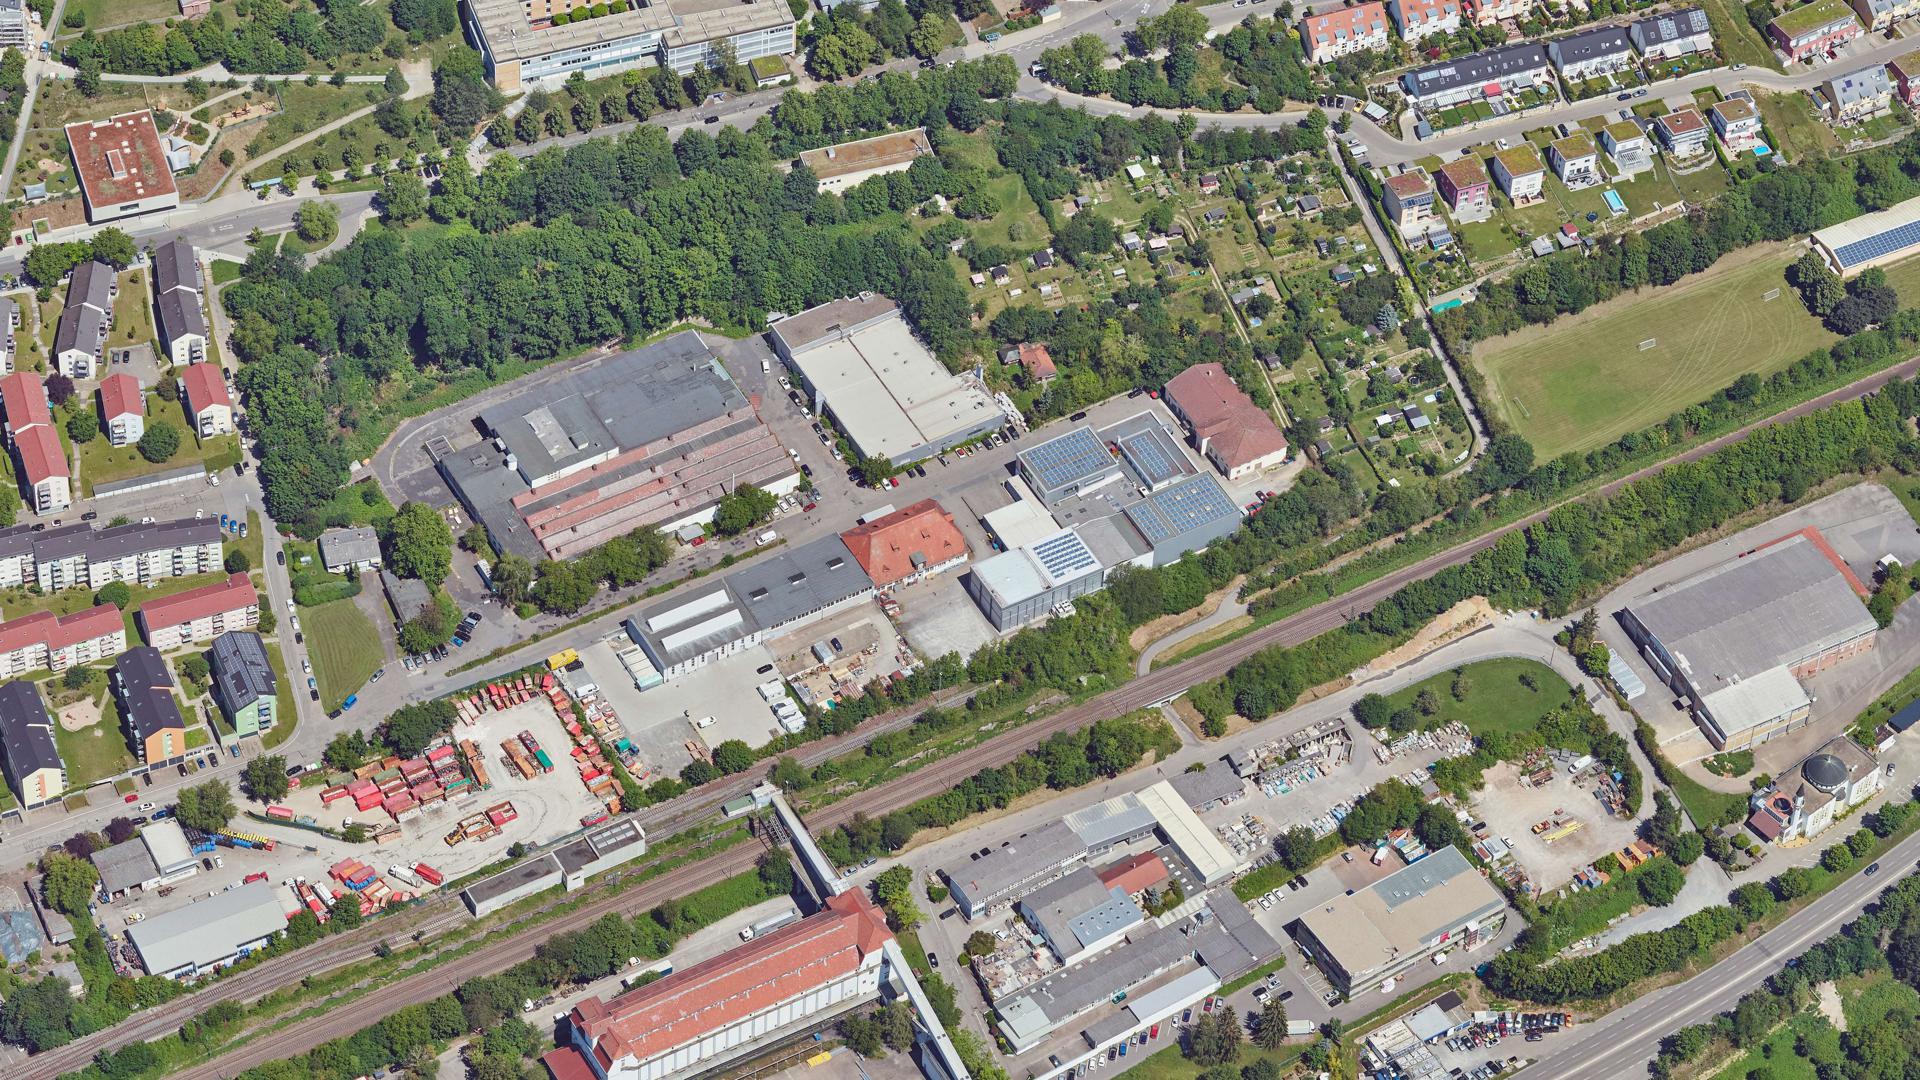 Luftbild Oststadt Pforzheim mit Kohlebunker, alter Schlachthof, Aldinger, Bahn, Schrebergärten, Kepler-Gymnasium, Geschosswohnungsbau